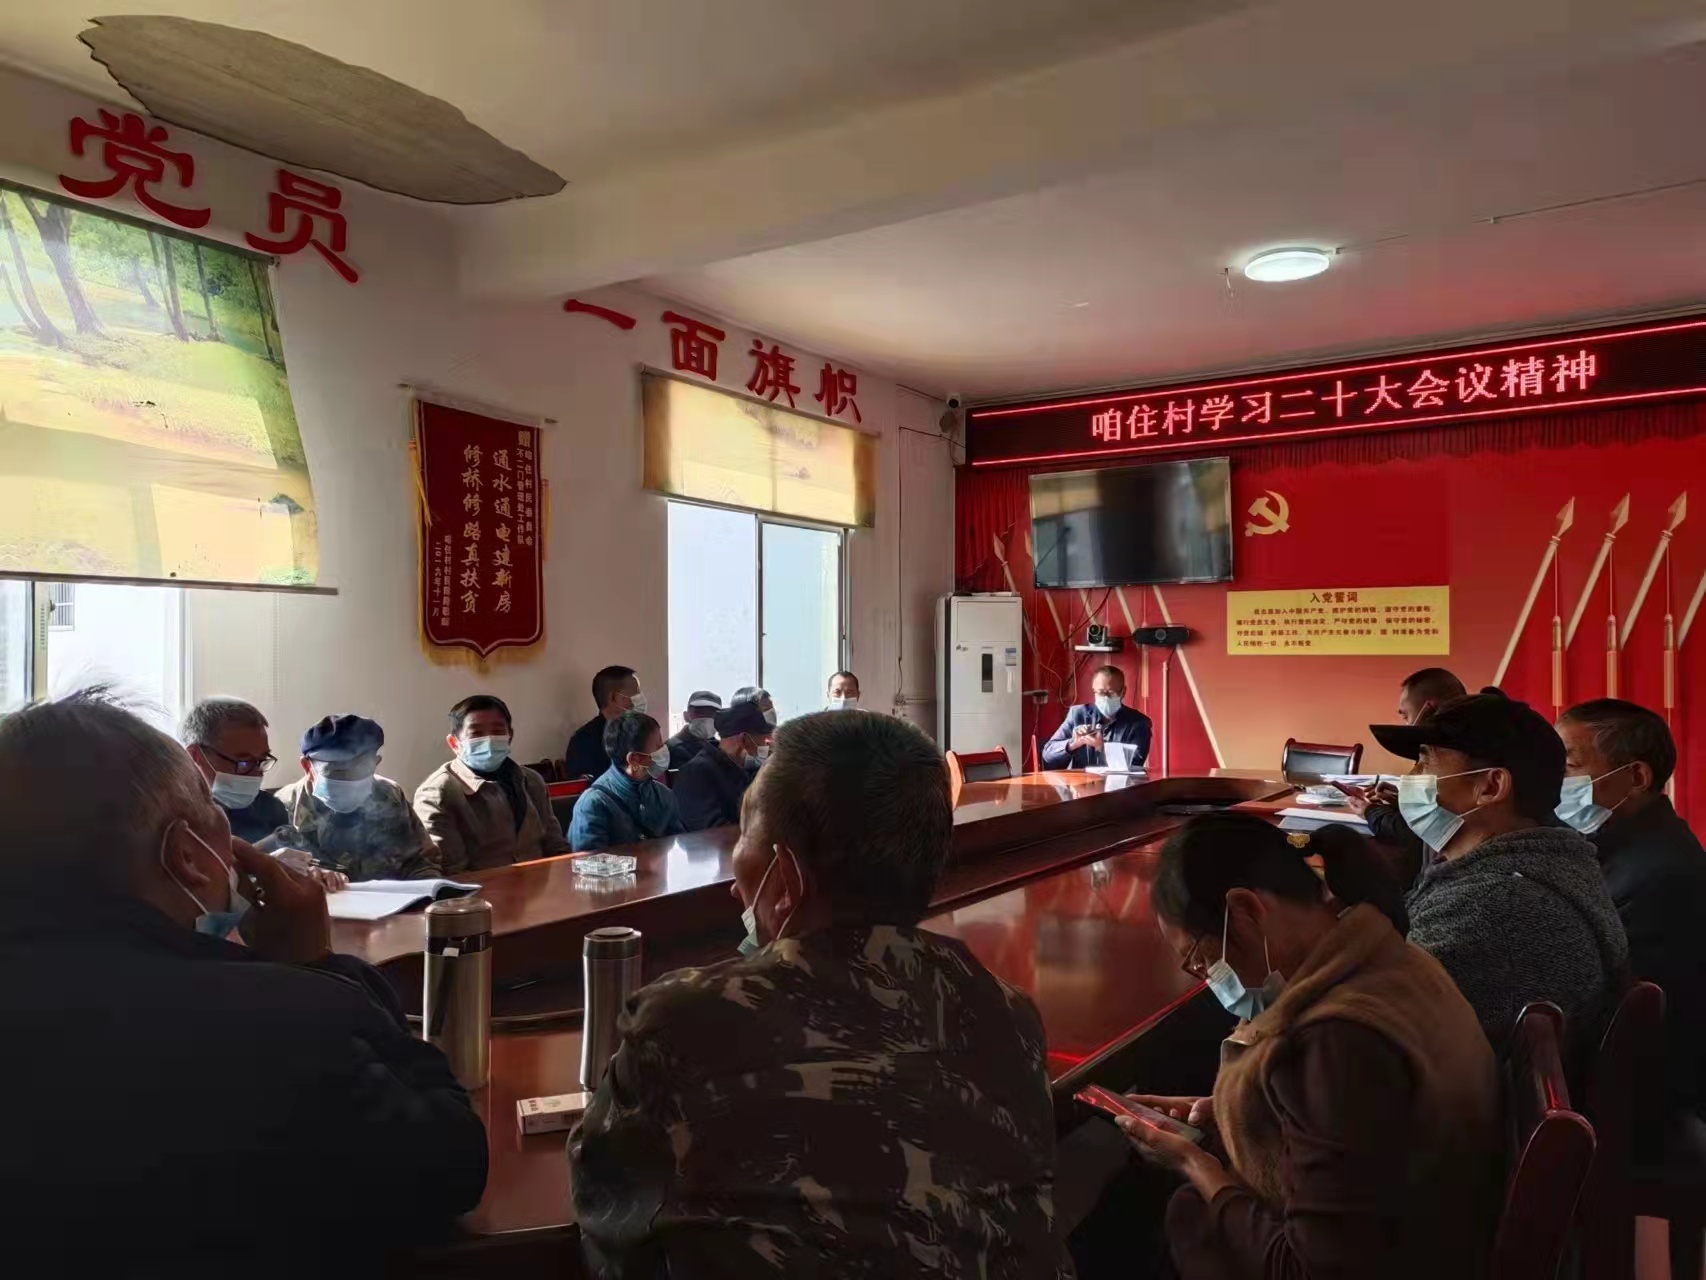 灵溪镇咱住村组织召开学习“党的二十大会议精神”专题会议